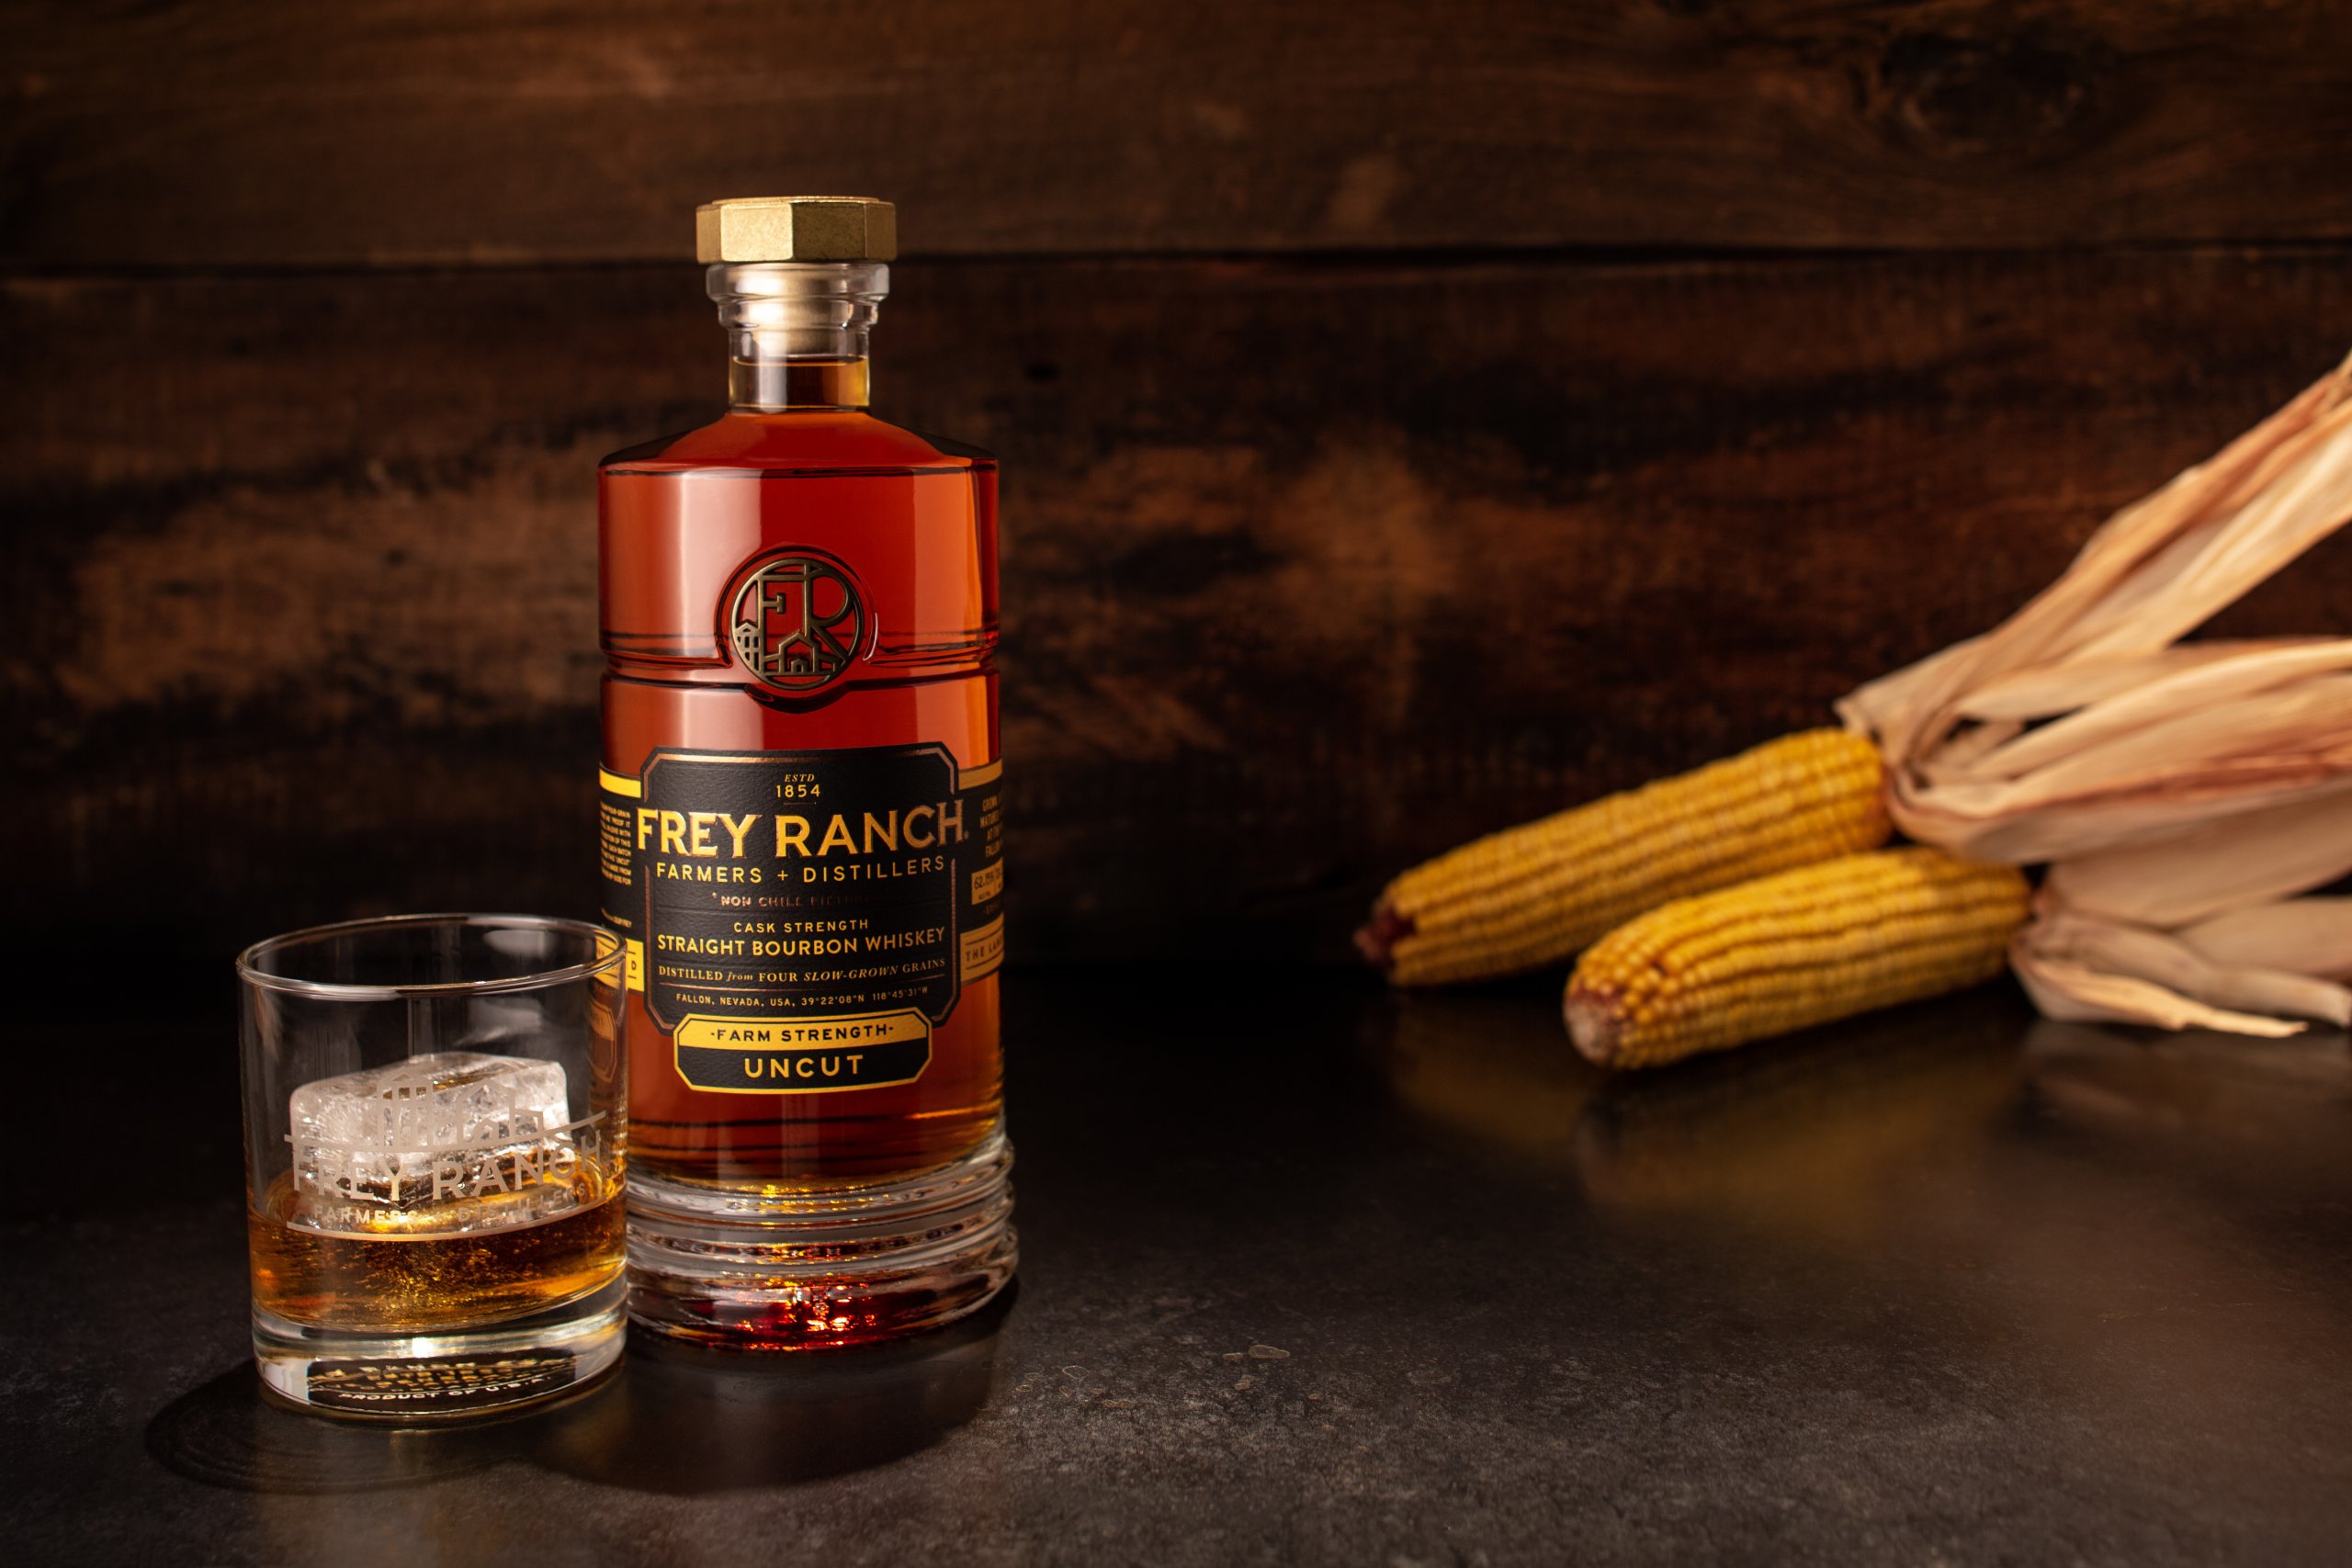 Frey Ranch Farm Strength Uncut Bourbon. Image courtesy Frey Ranch.